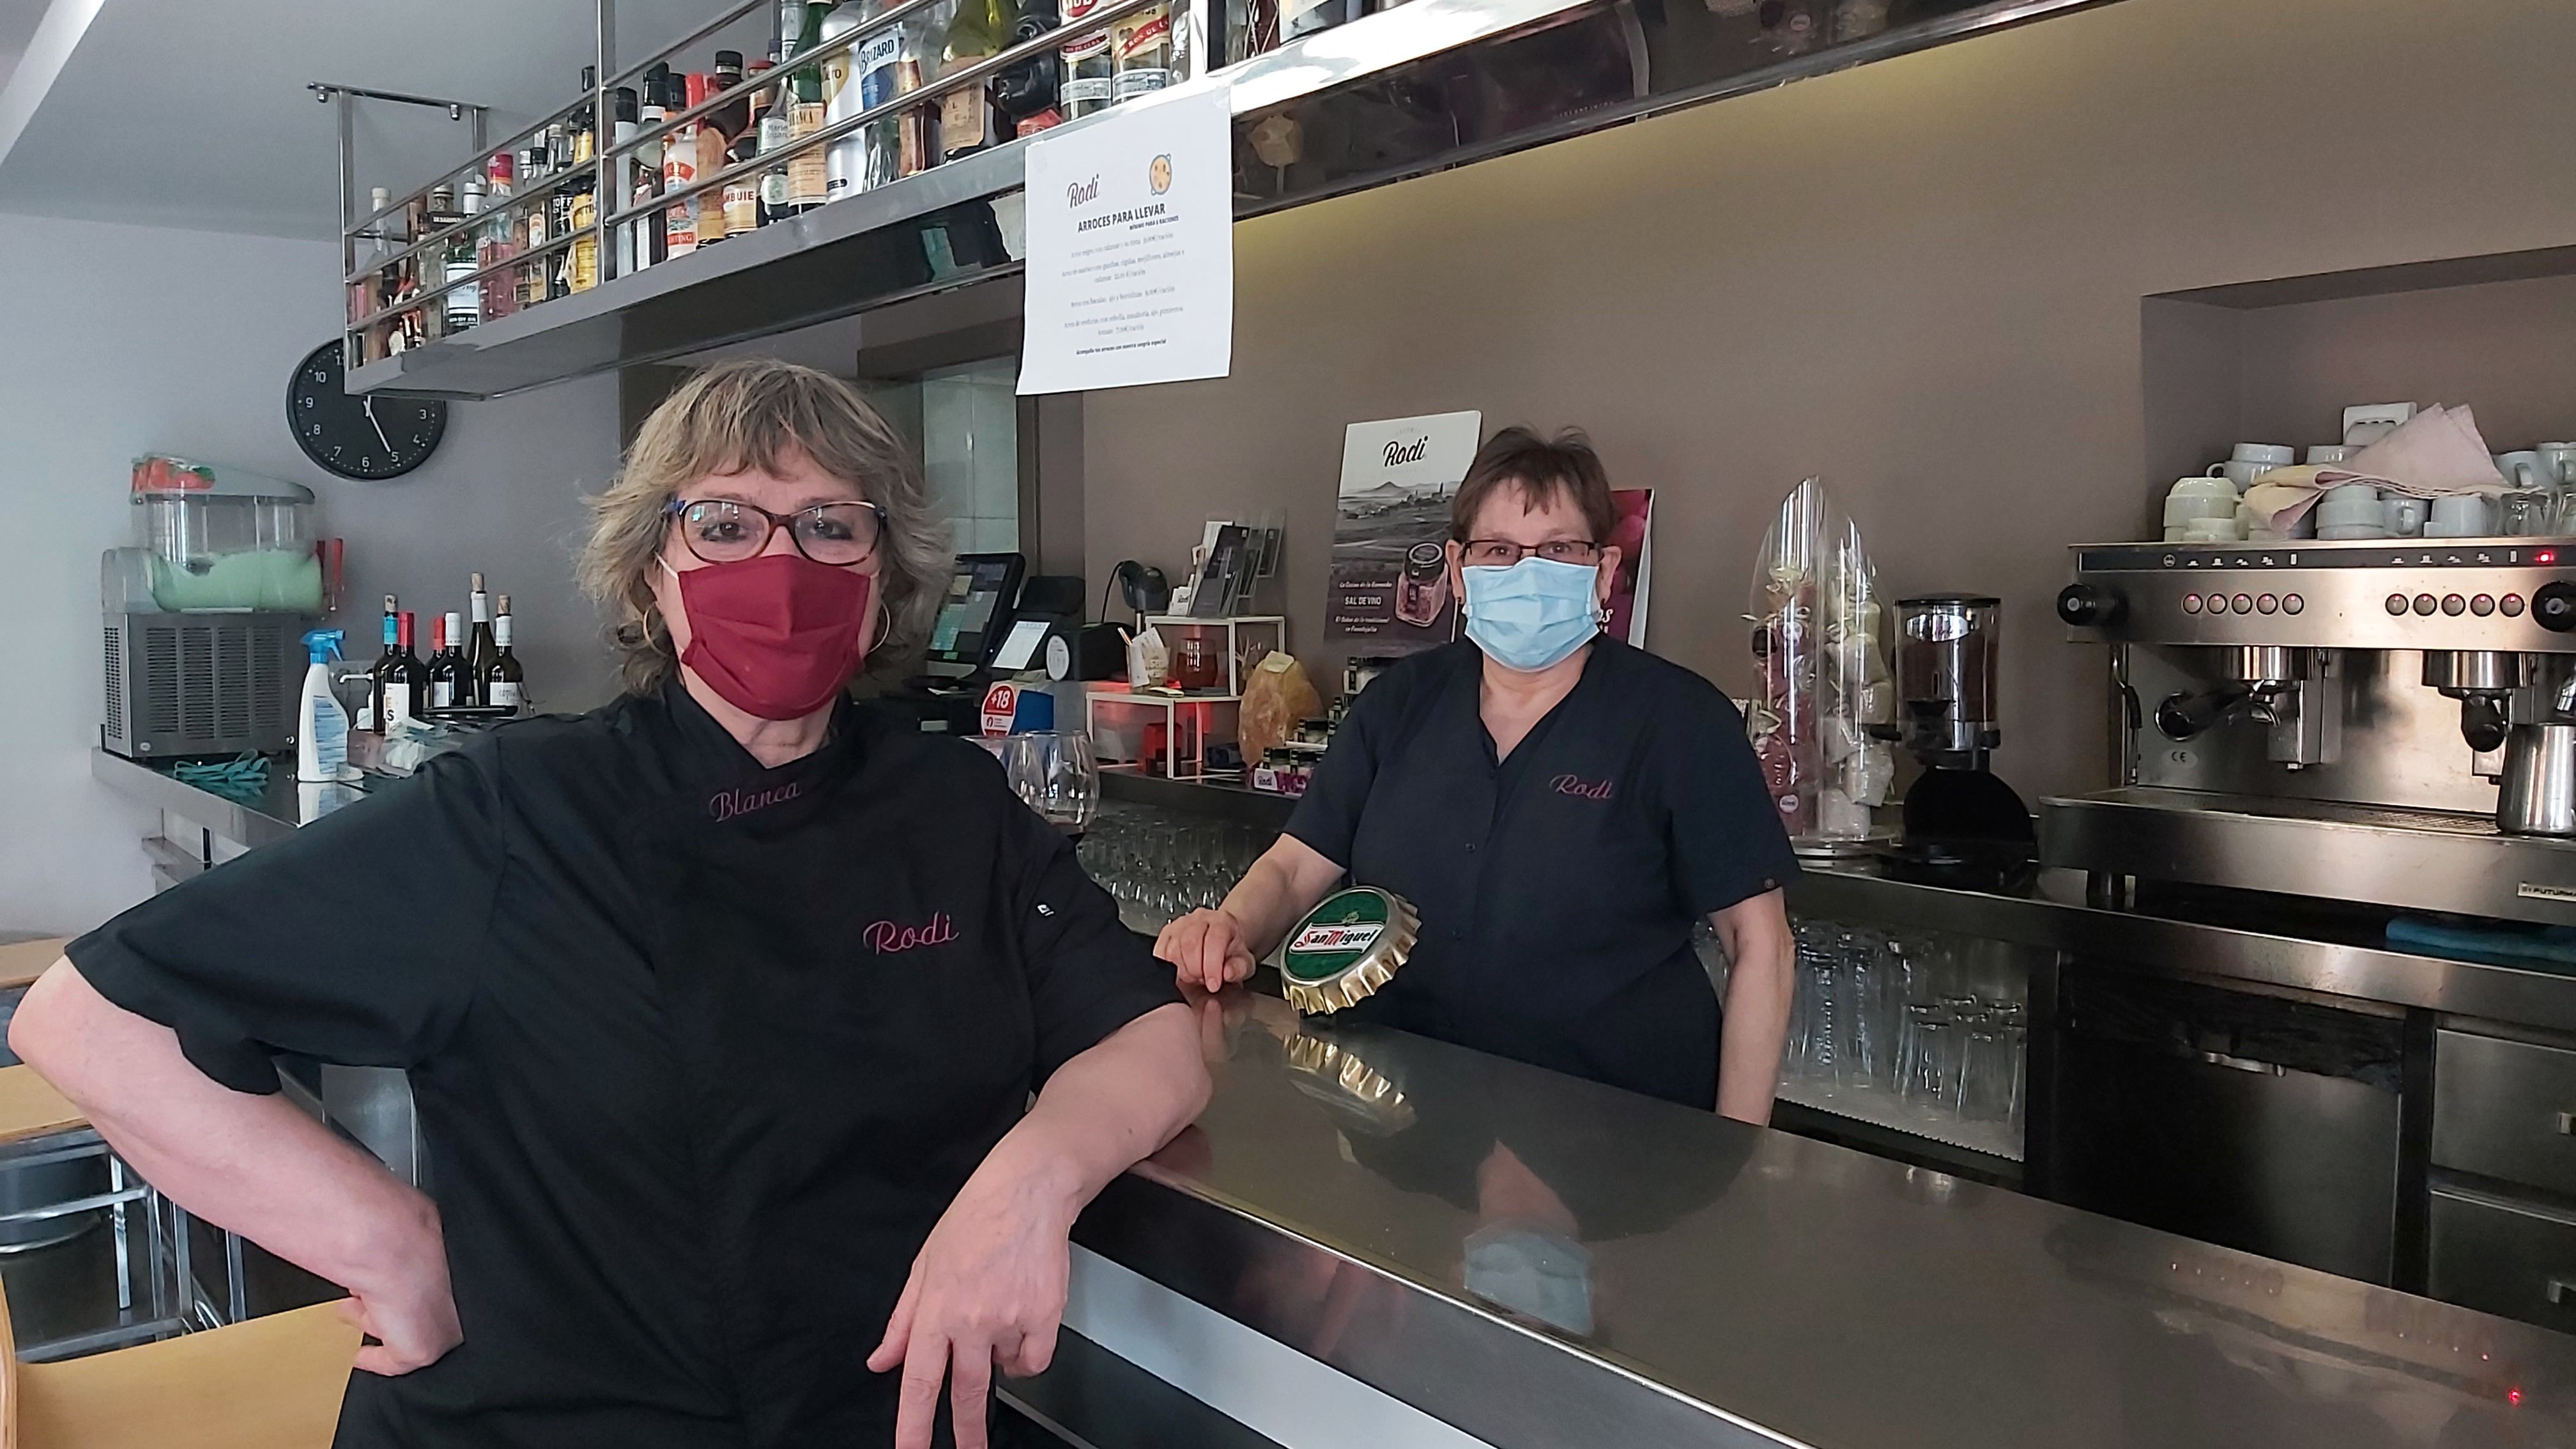 El restaurante Rodi de Fuendejalón gana el premio Alimentos de España a la Restauración